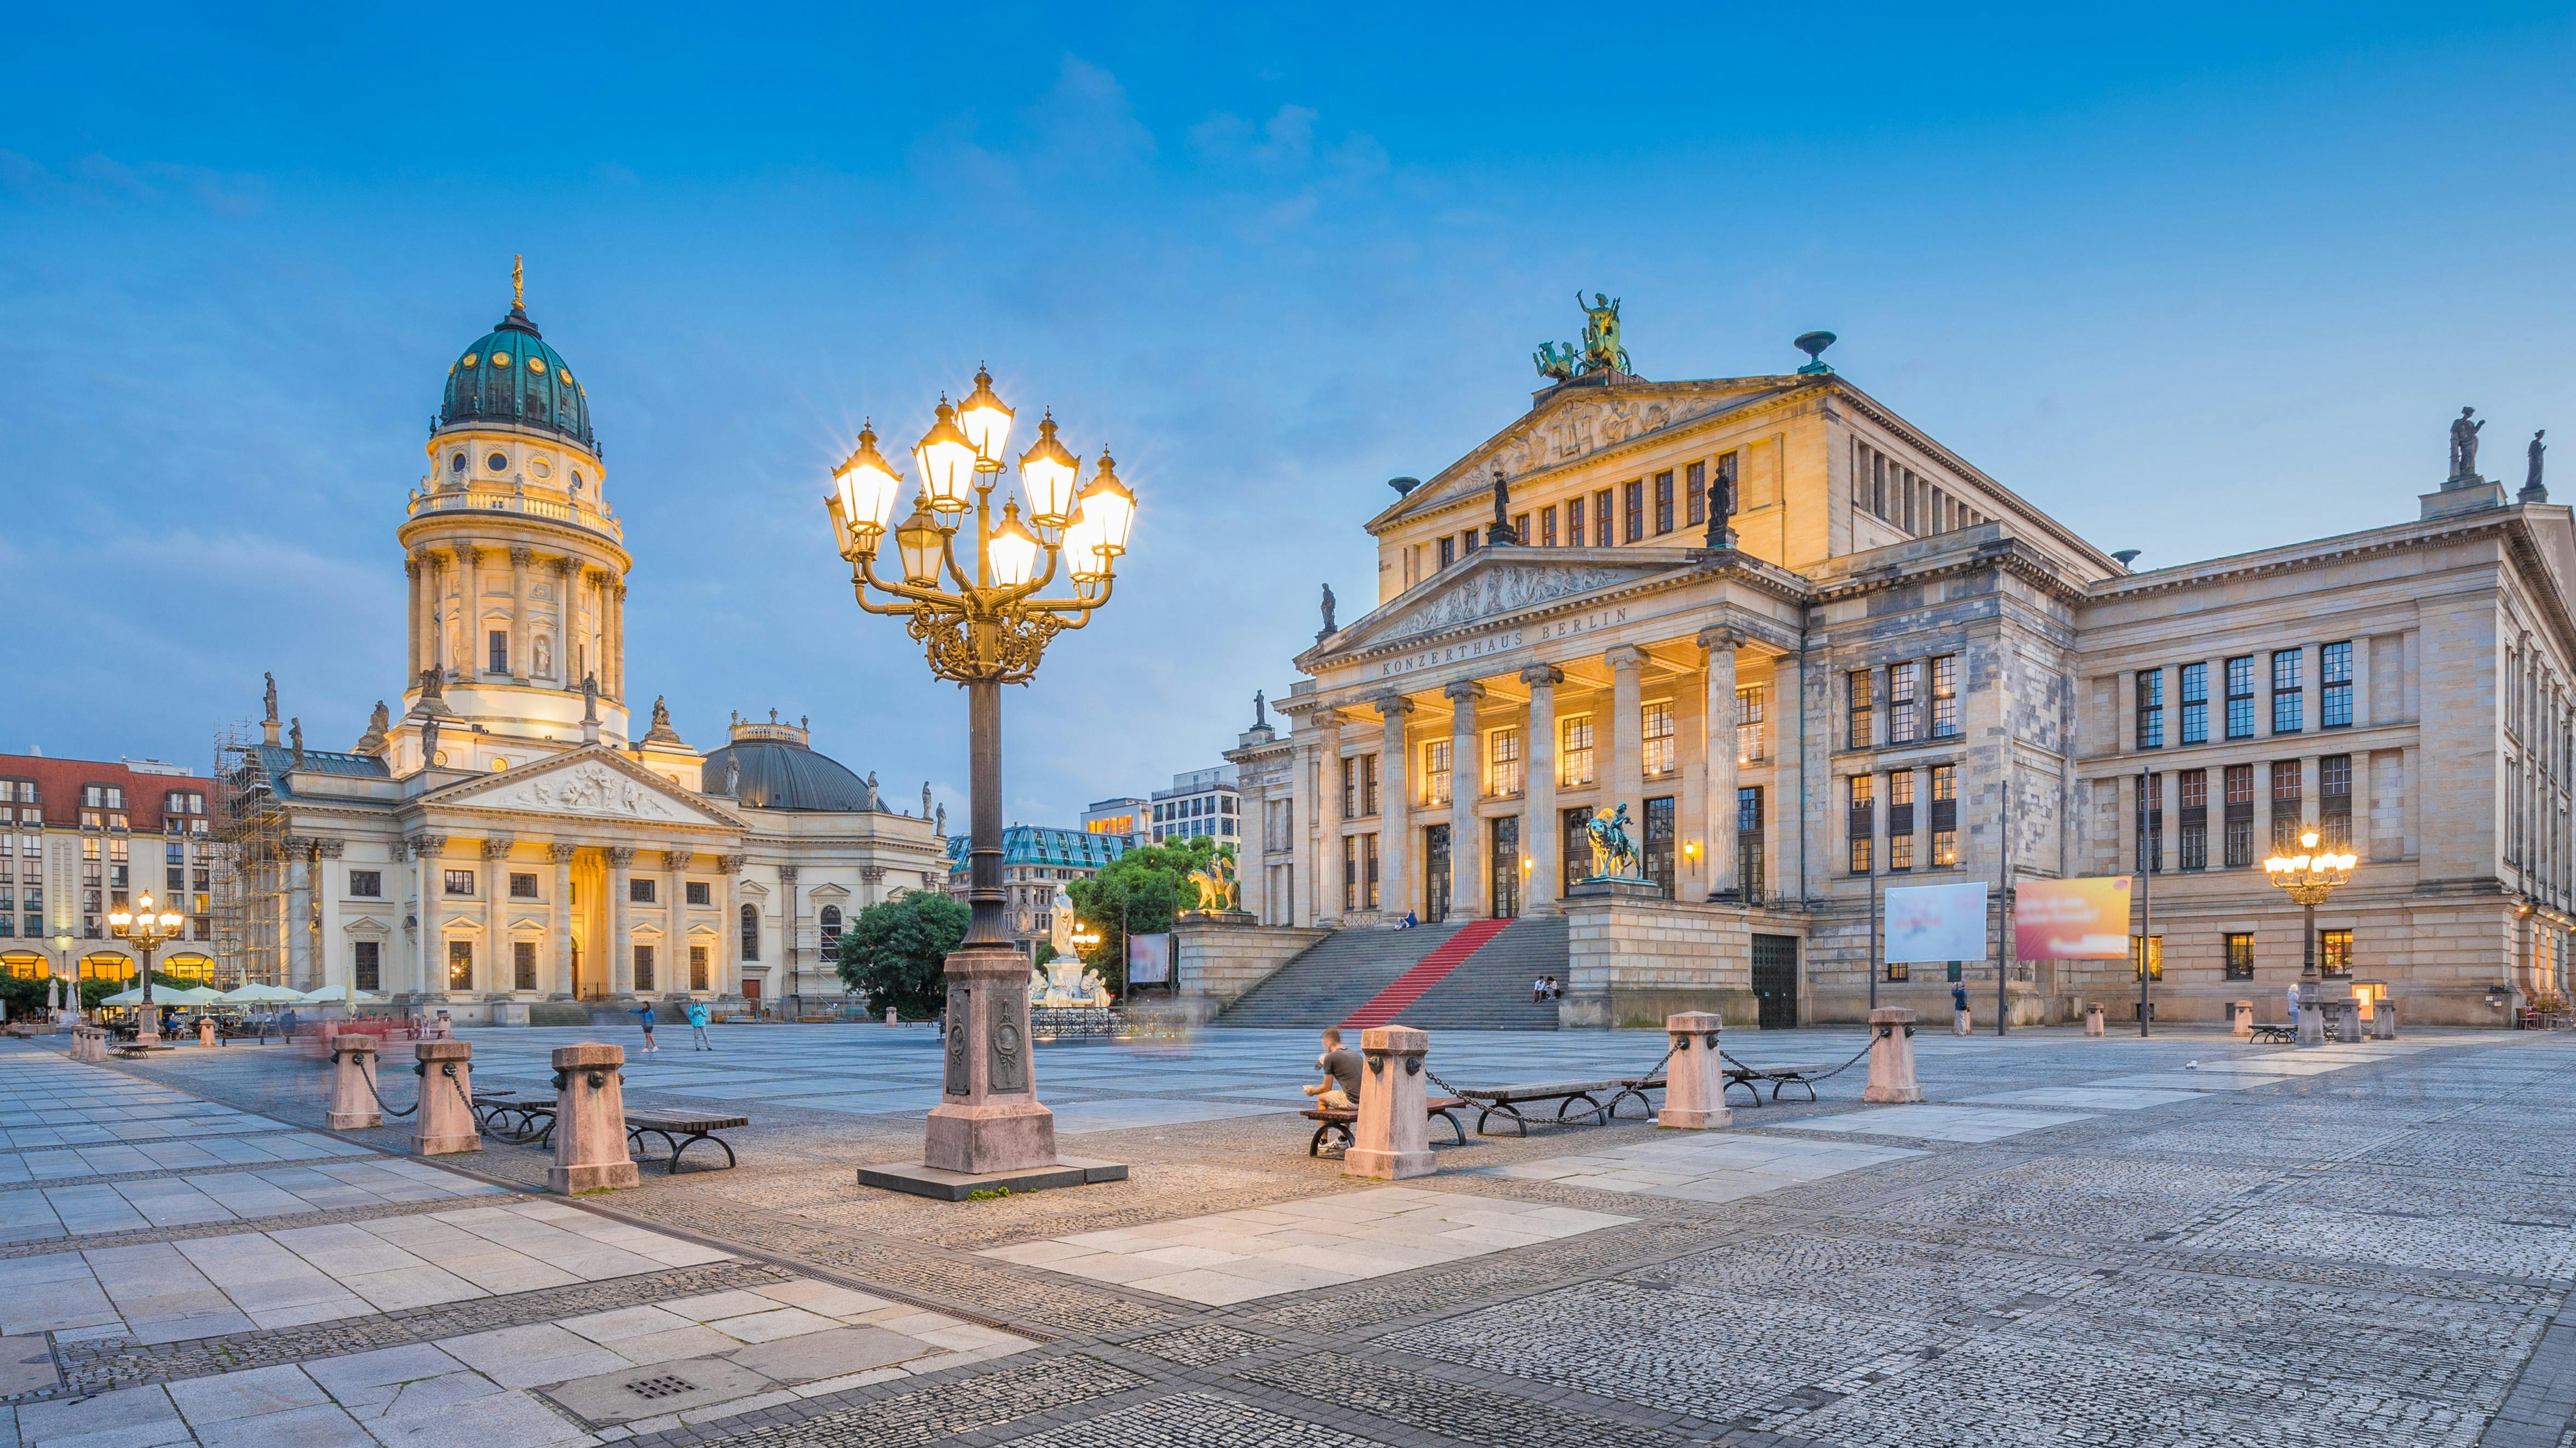 Excursão guiada de uma hora por Berlim ao centro histórico